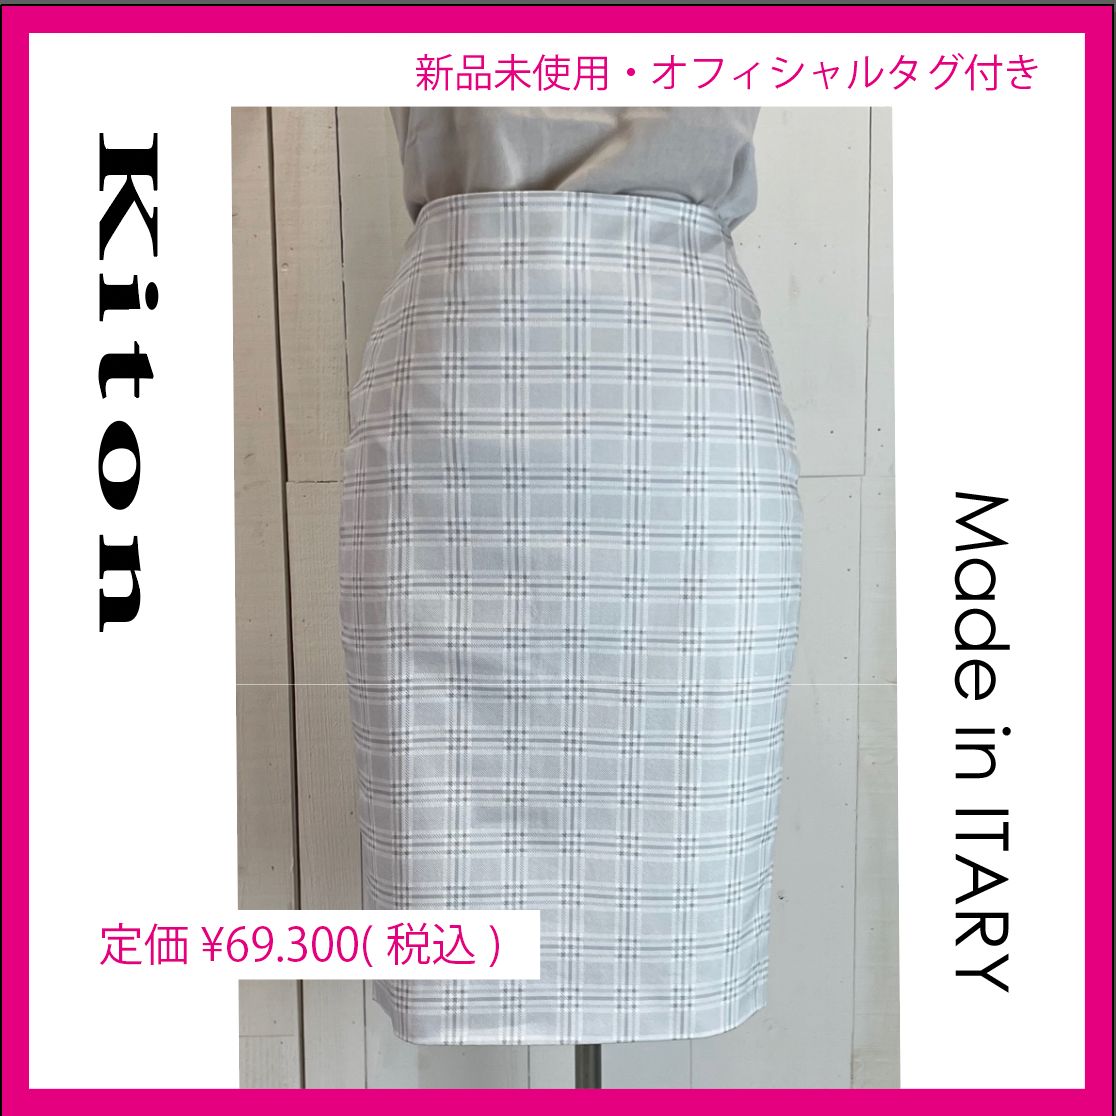 【 新品未使用☆タグ付き 】KITON〈キトン〉 スカート サイズ44フレンチのインポートアパレル